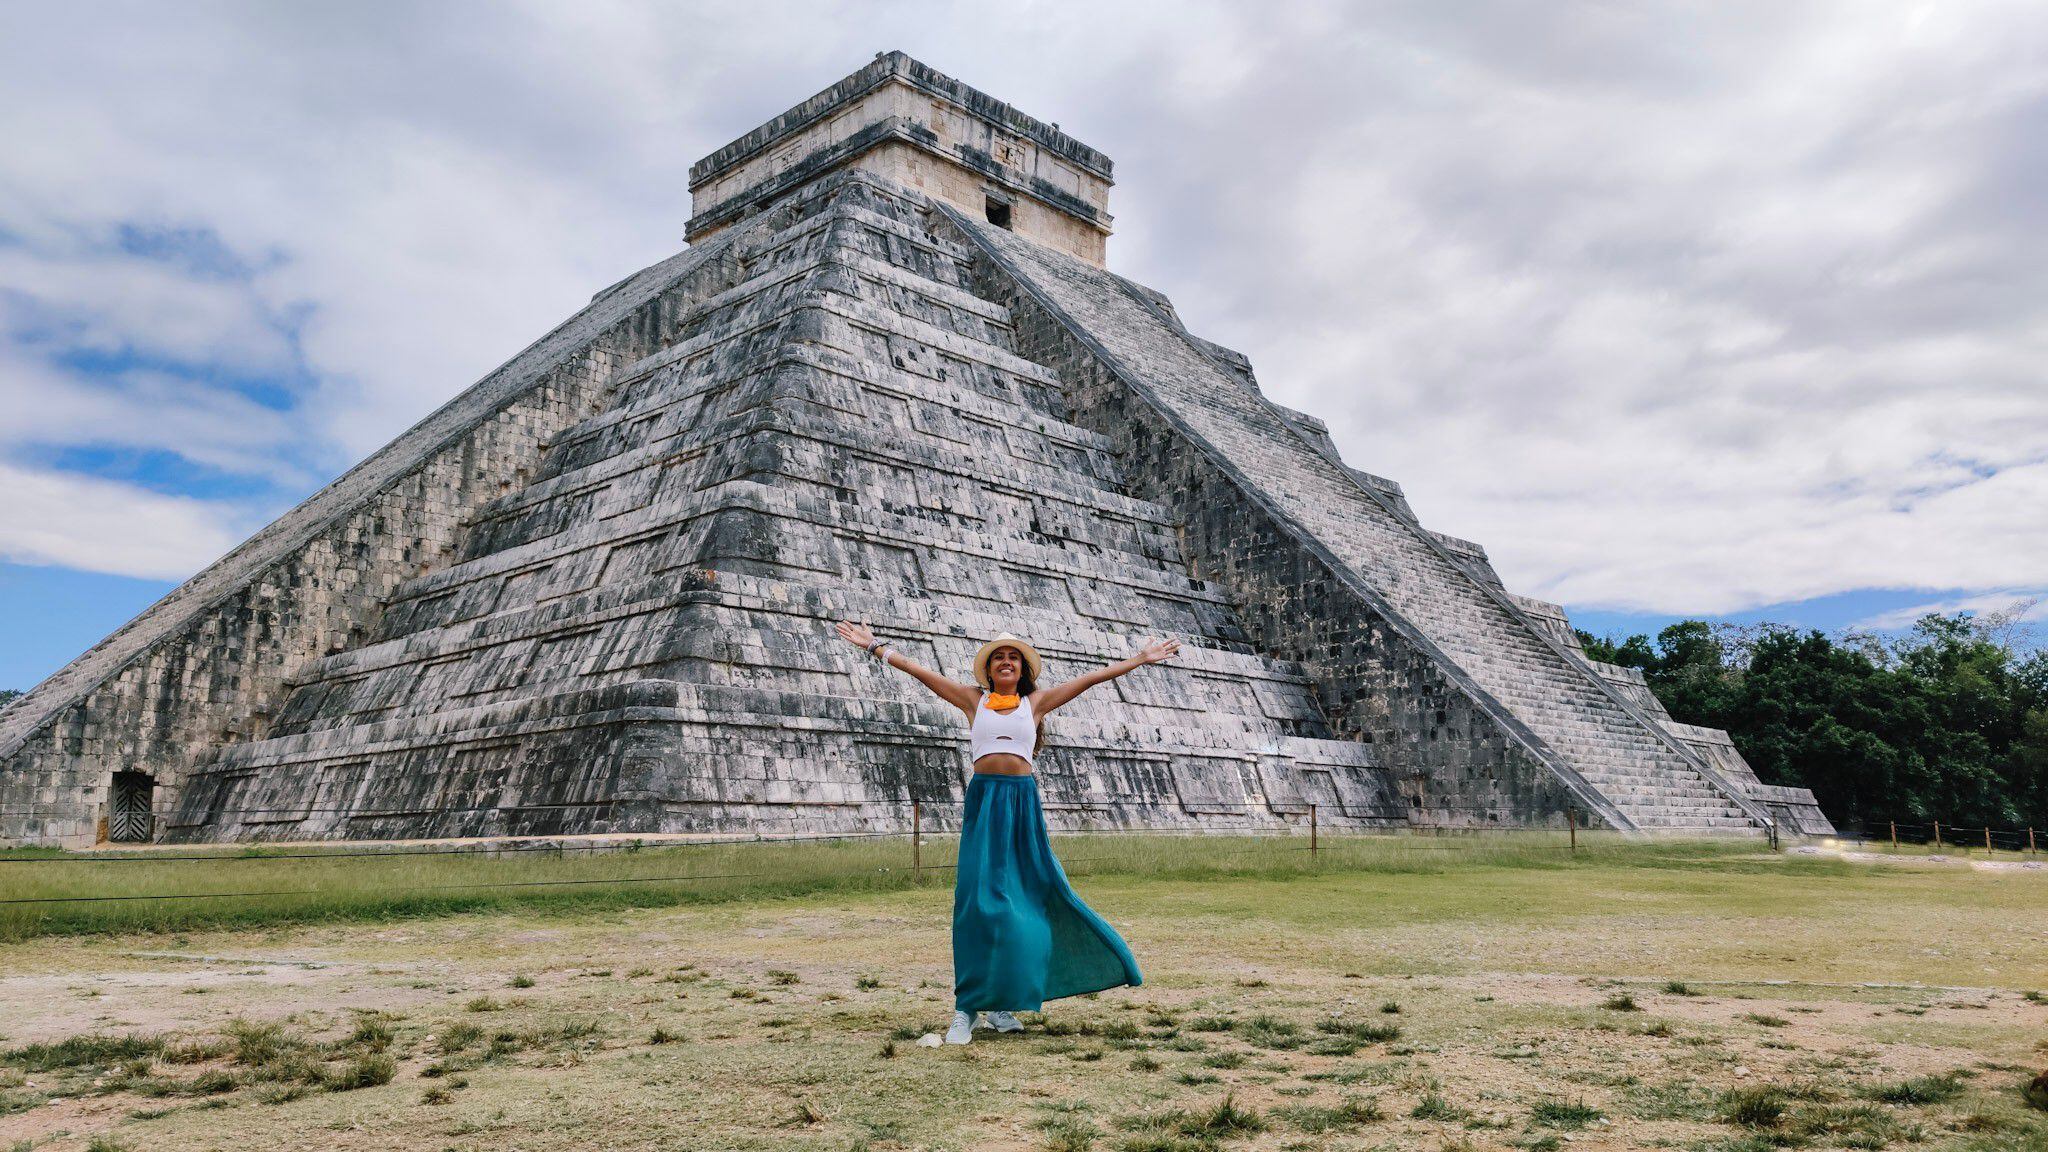 Templo maya-tolteca de Kukulcán, también conocido con el nombre de El Castillo, en el sitio arqueológico de Chichén Itzá, en la península de Yucatán (México). 